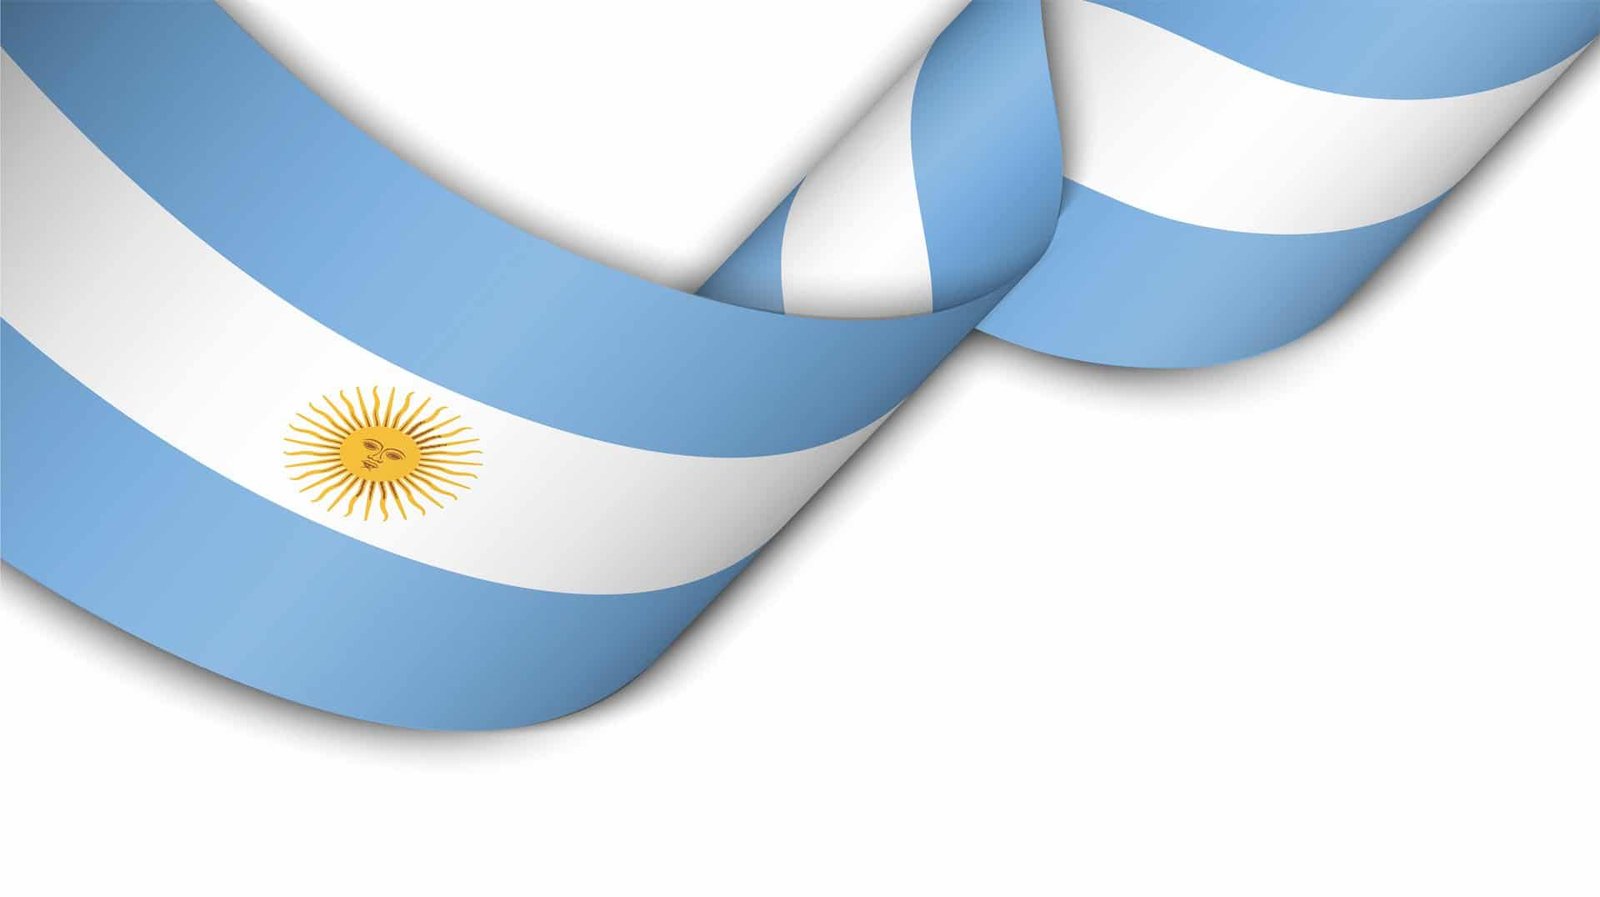 Teletrabajo en Argentina